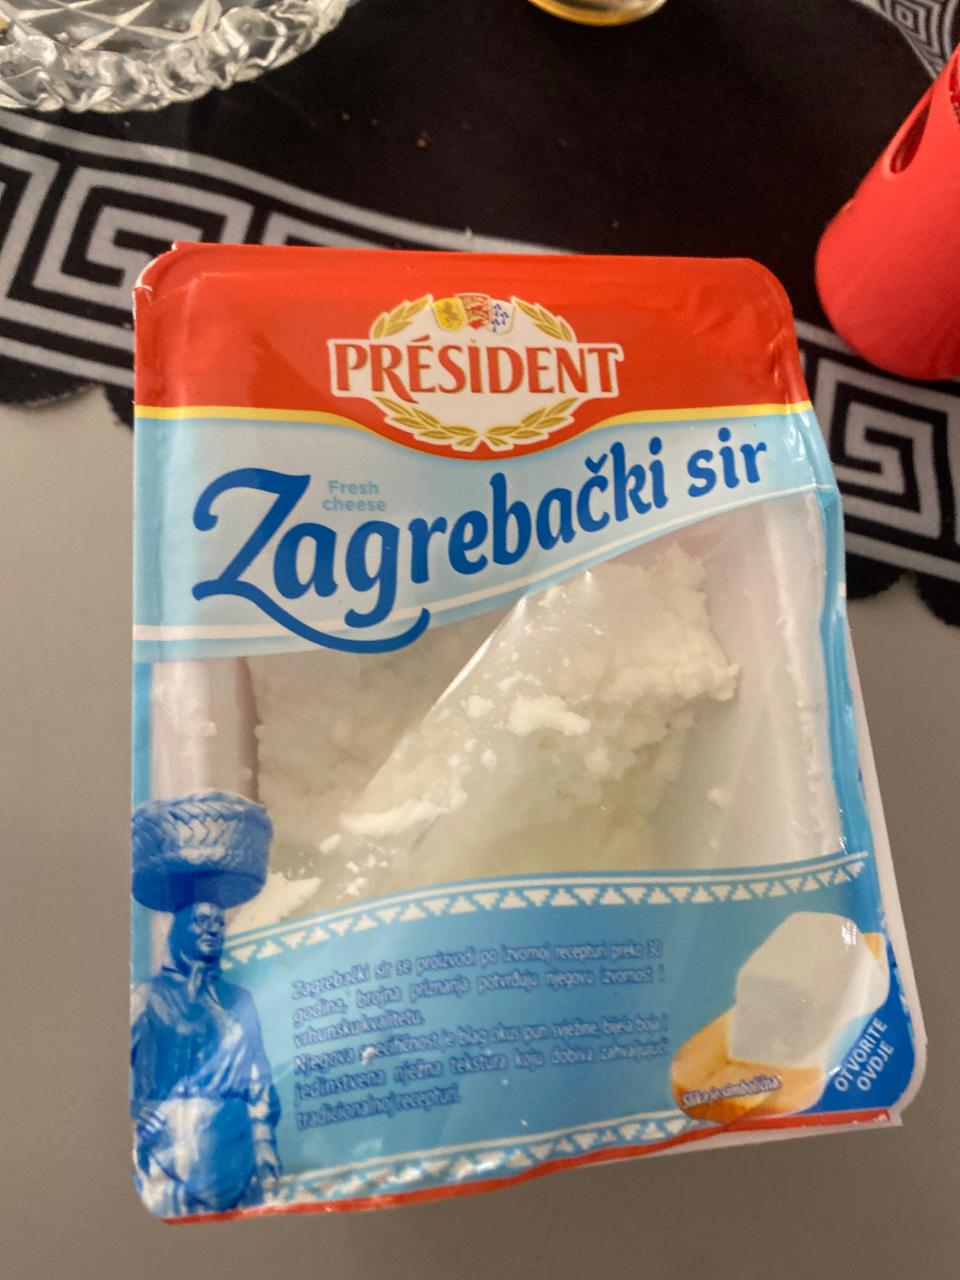 Фото - мягкий сыр Zagrebacski 20% President